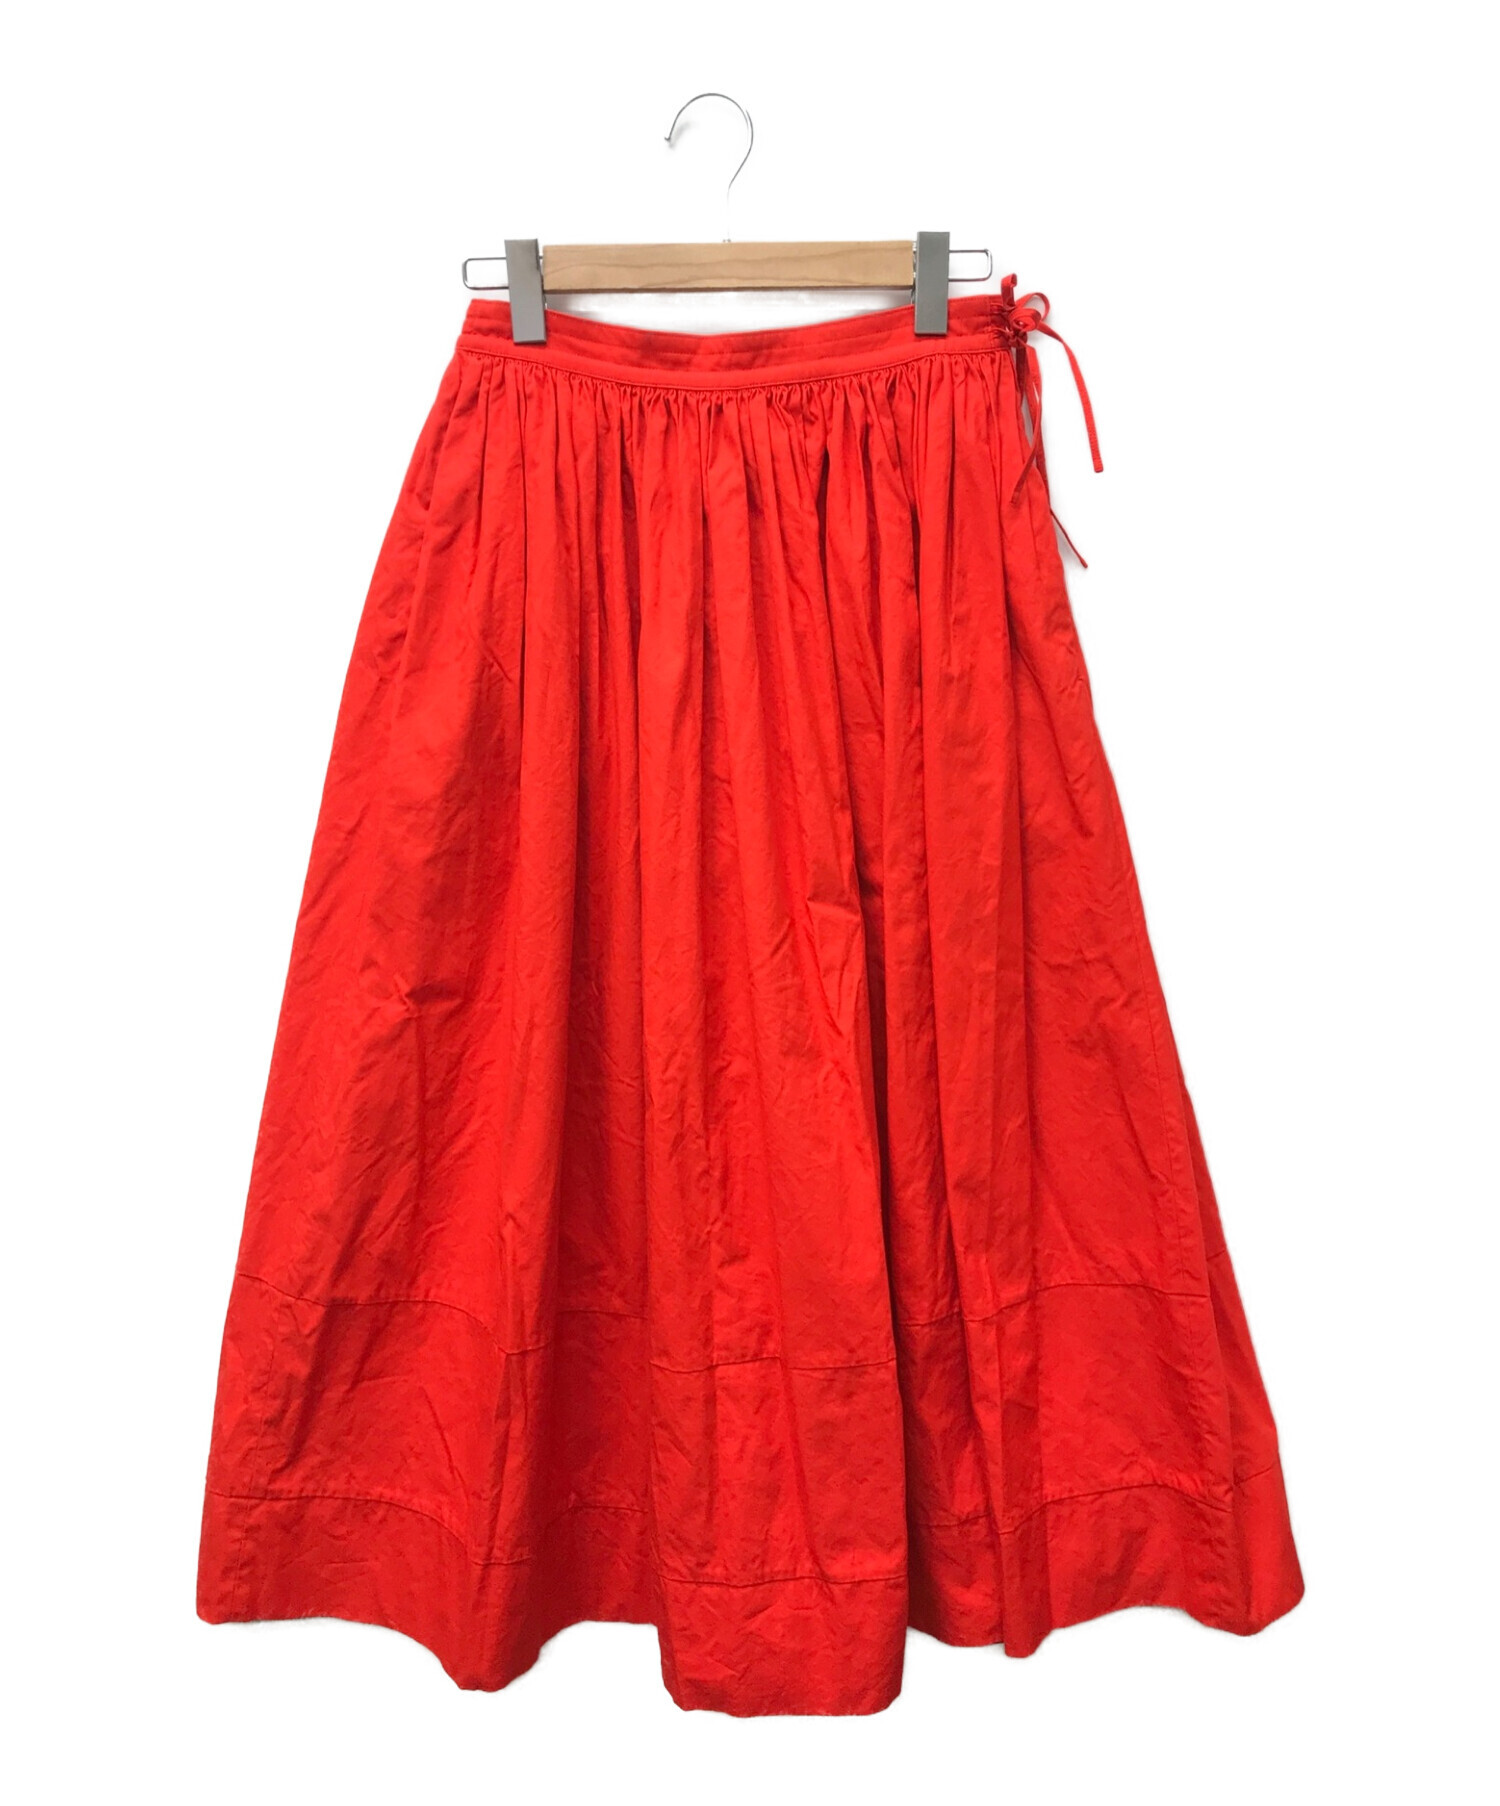 Drawer ドゥロワー スカート レッド サイズ36 - ロングスカート